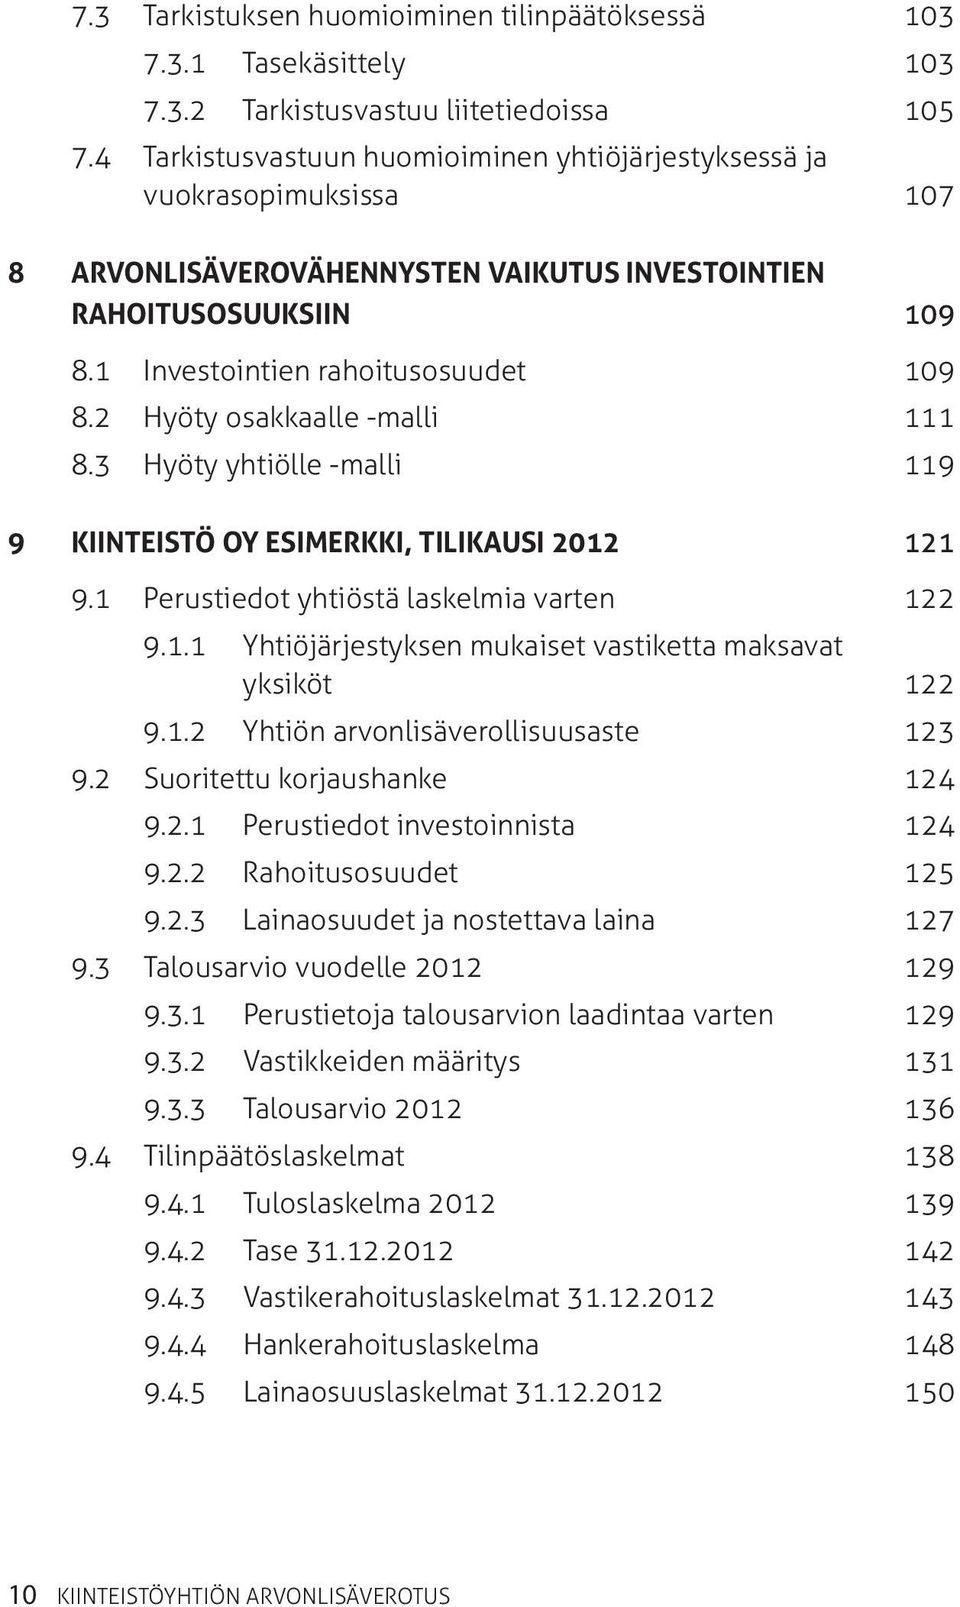 2 Hyöty osakkaalle -malli 111 8.3 Hyöty yhtiölle -malli 119 9 KIINTEISTÖ OY ESIMERKKI, TILIKAUSI 2012 121 9.1 Perustiedot yhtiöstä laskelmia varten 122 9.1.1 Yhtiöjärjestyksen mukaiset vastiketta maksavat yksiköt 122 9.